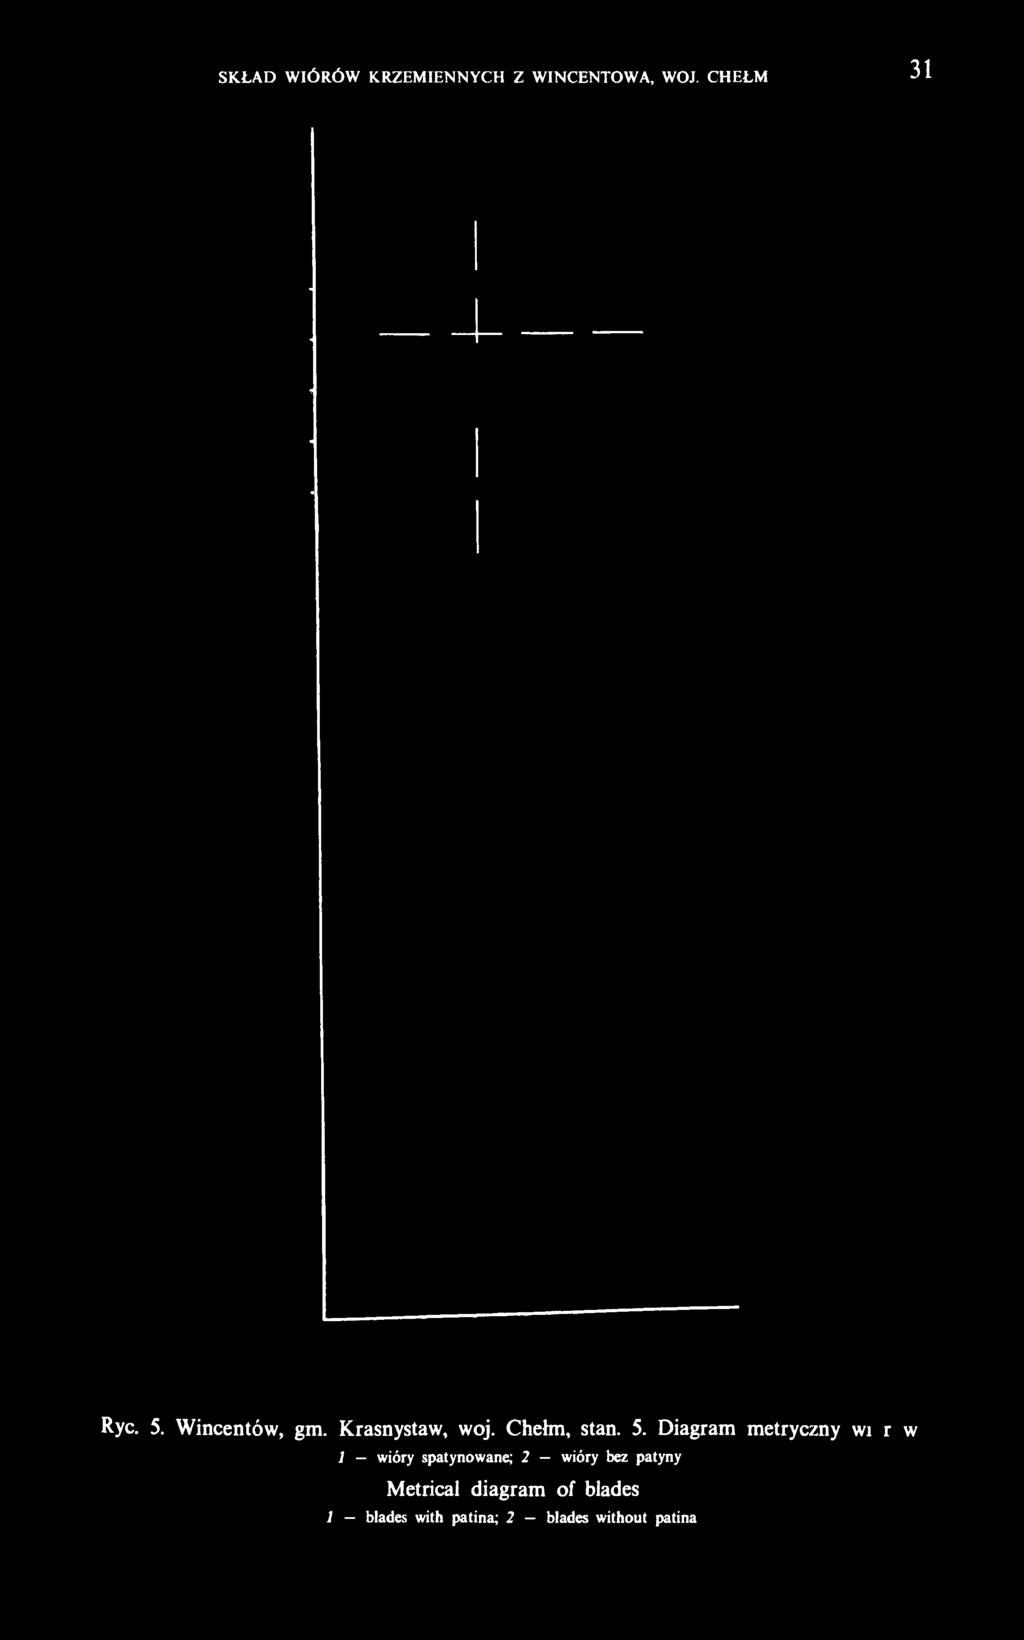 Diagram metryczny wiórów 1 wióry spatynowane; 2 wióry bez